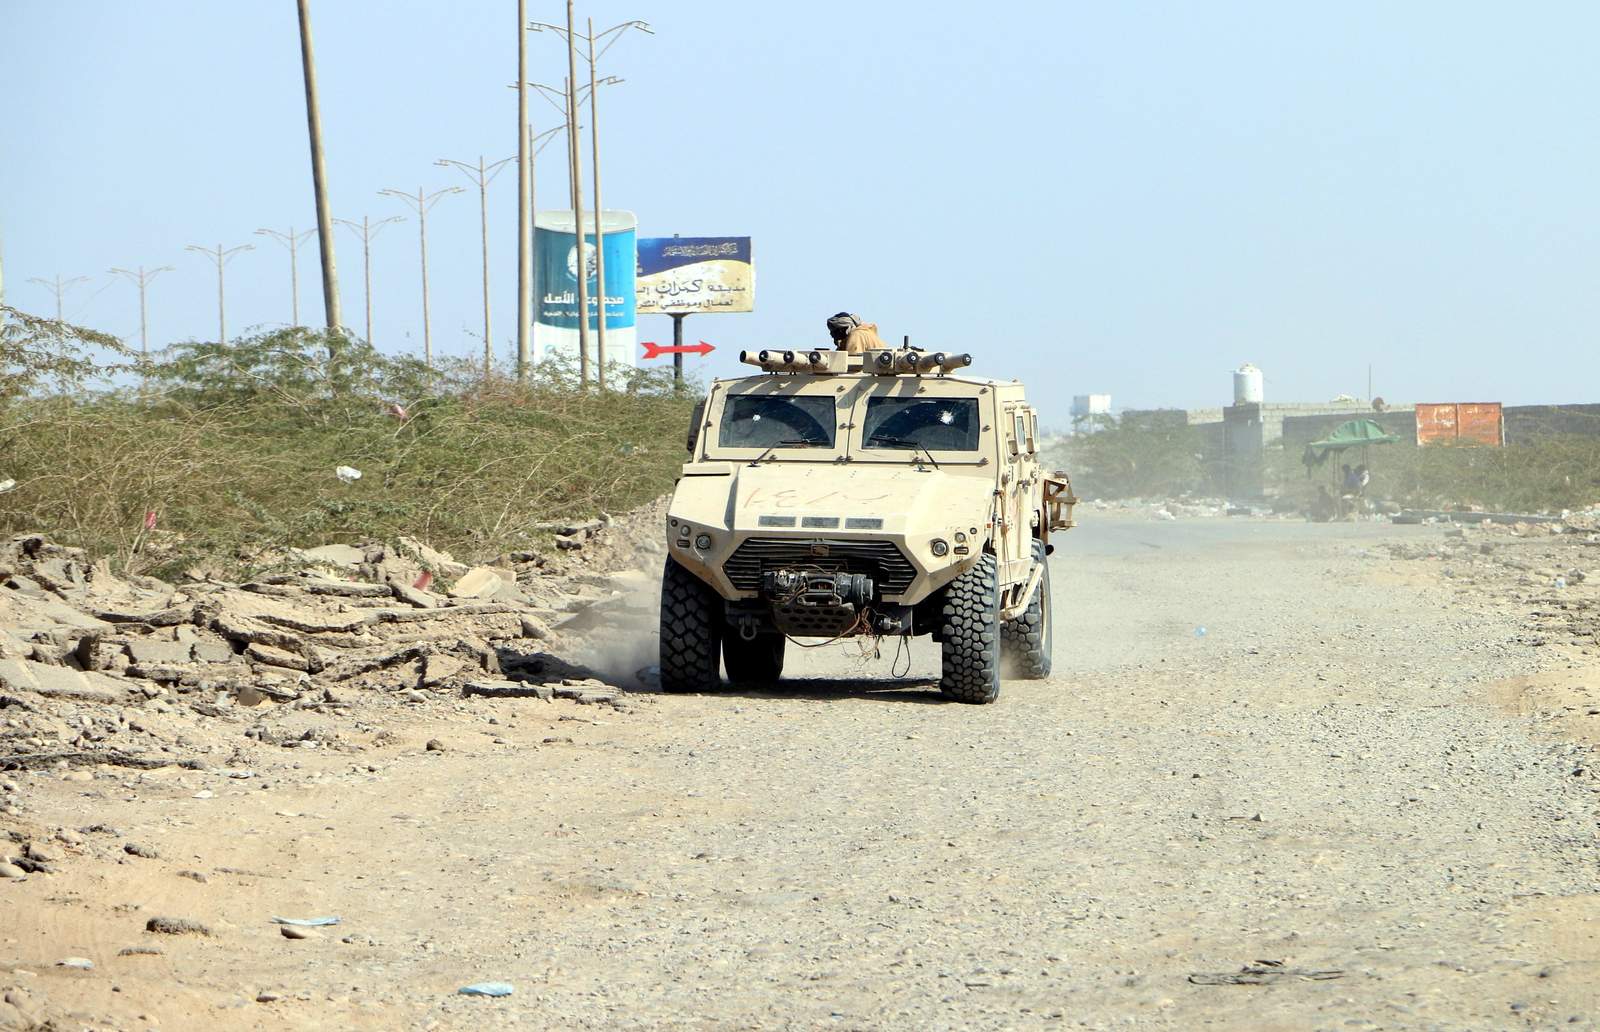 Intercambio de disparos se registraron este viernes a las afueras de Hodeidah, bajo control de los rebeldes Houthi y alrededor de la cual se encuentran agrupadas las fuerzas yemenitas respaldadas por la coalición árabe militar liderada por Arabia Saudita. (ARCHIVO)